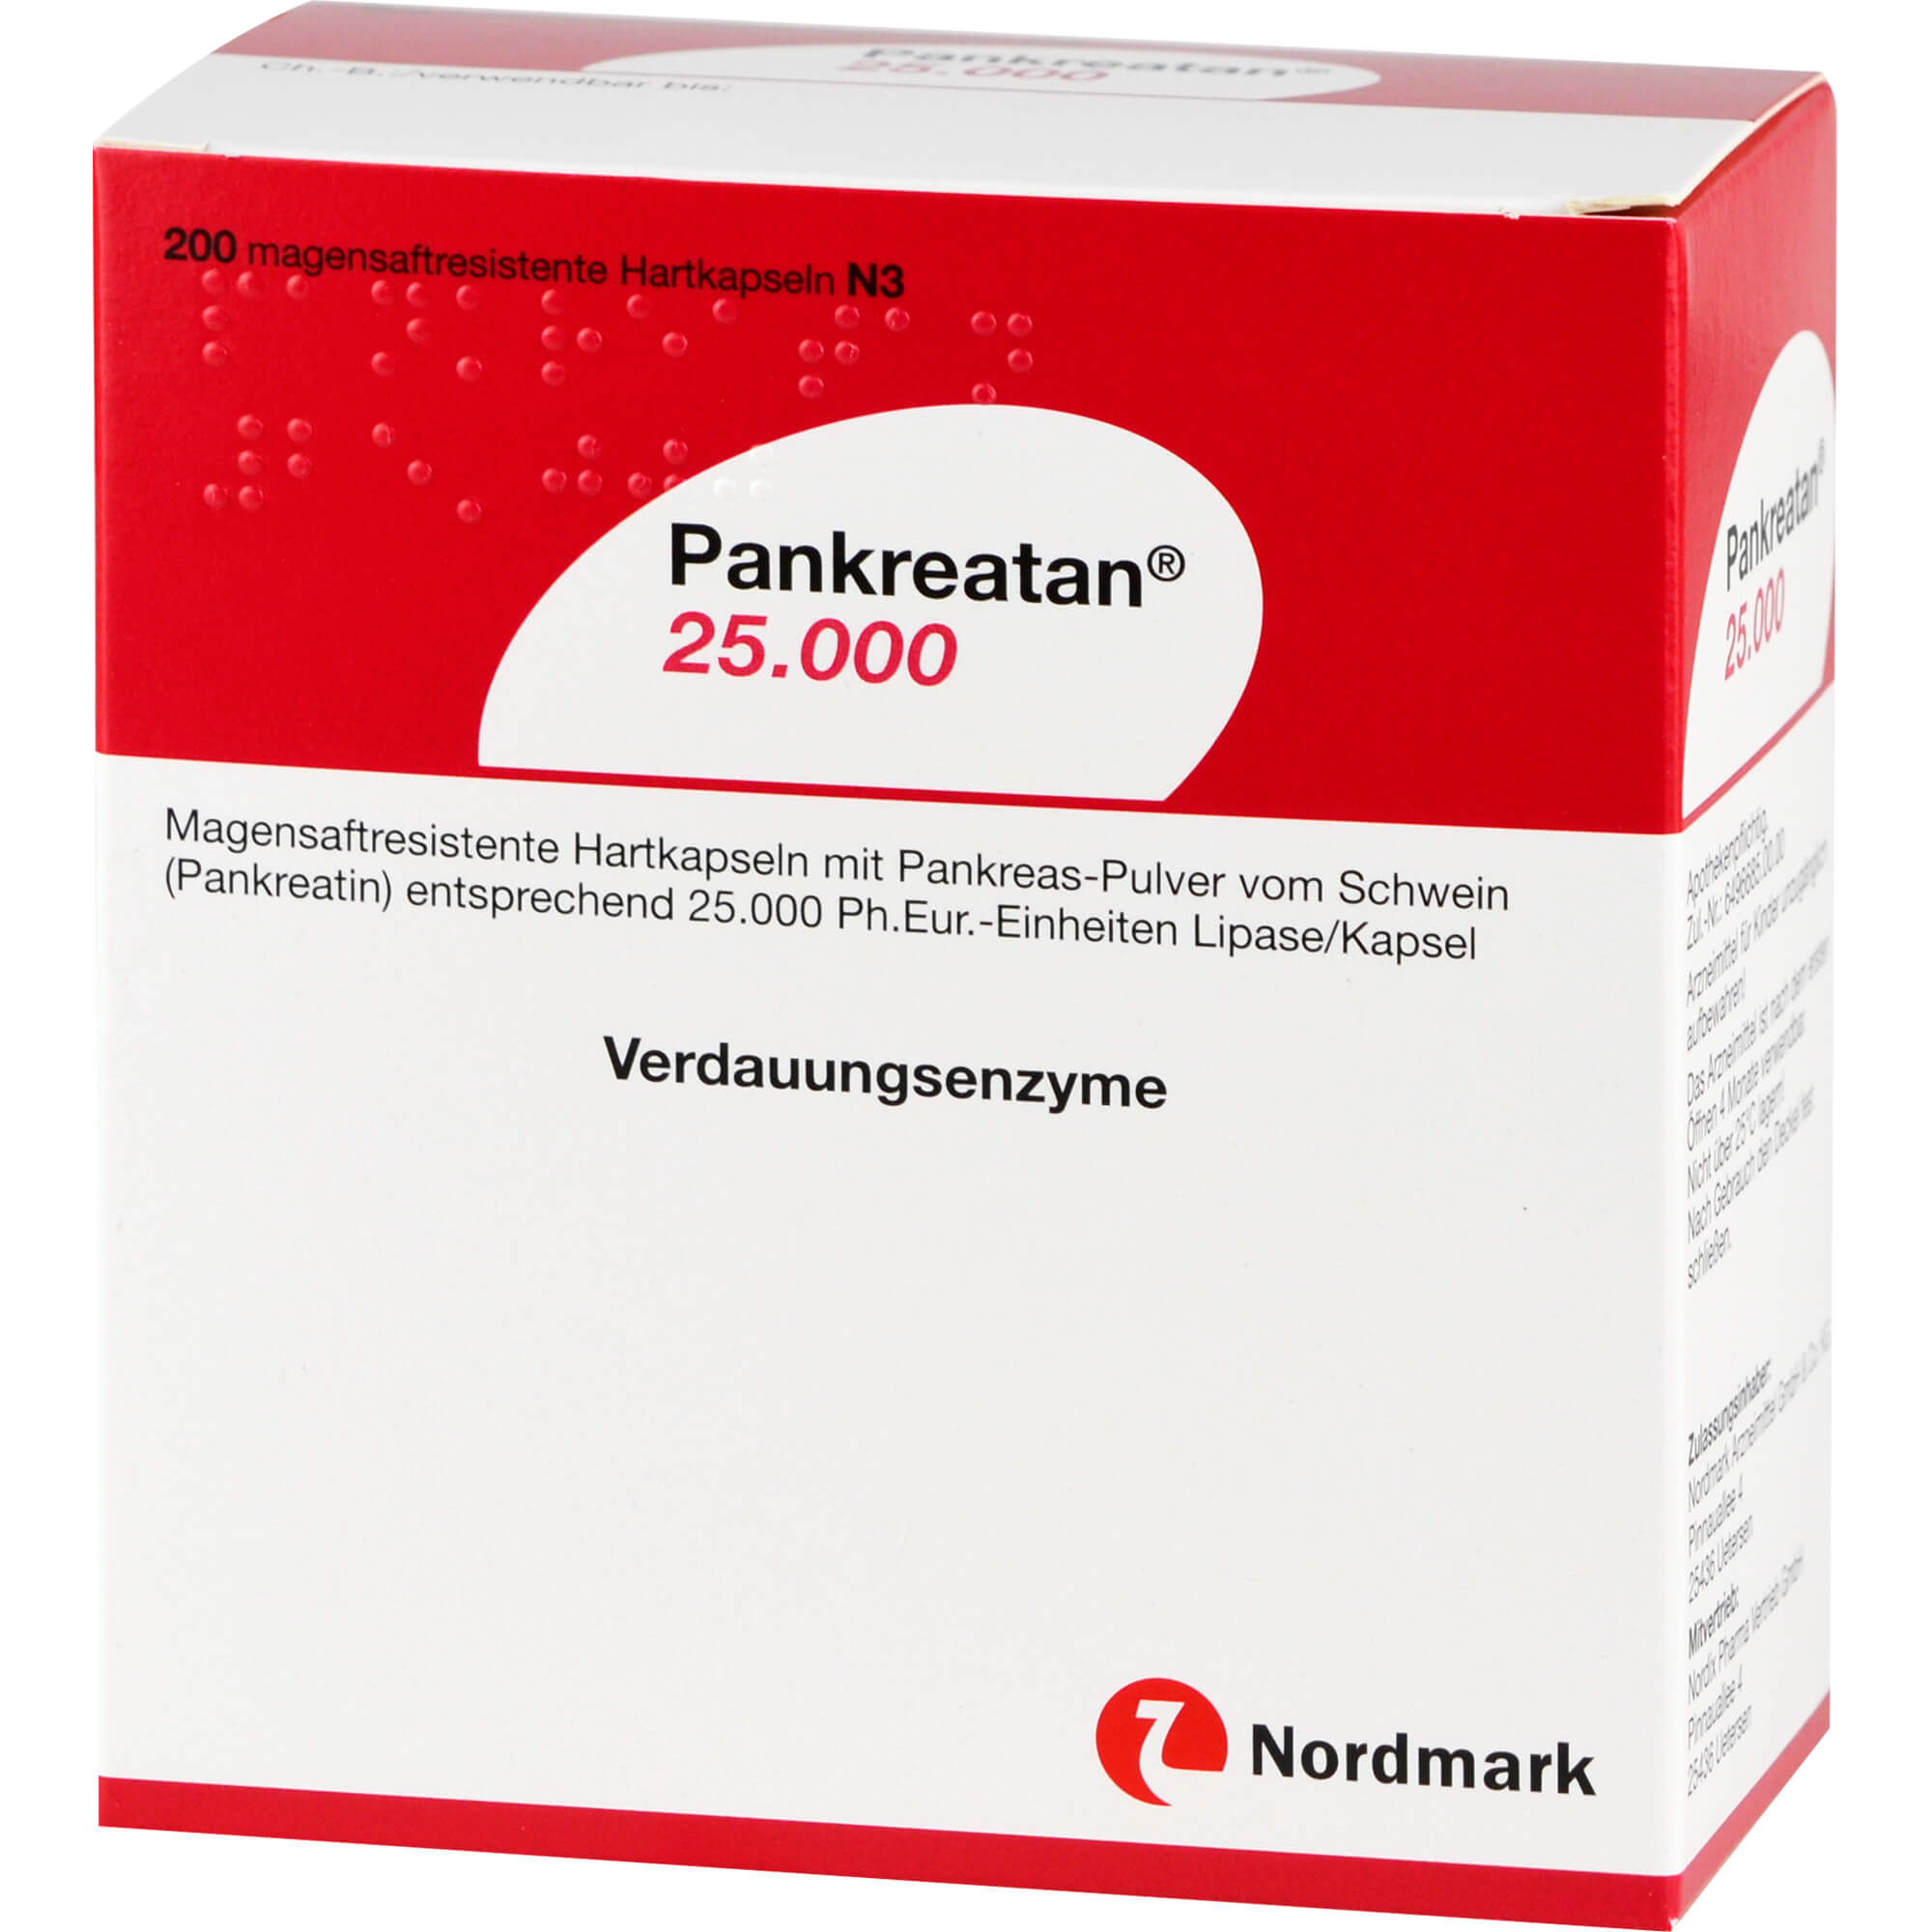 Zur Behandlung einer exokrinen Pankreasinsuffizienz angewendet.